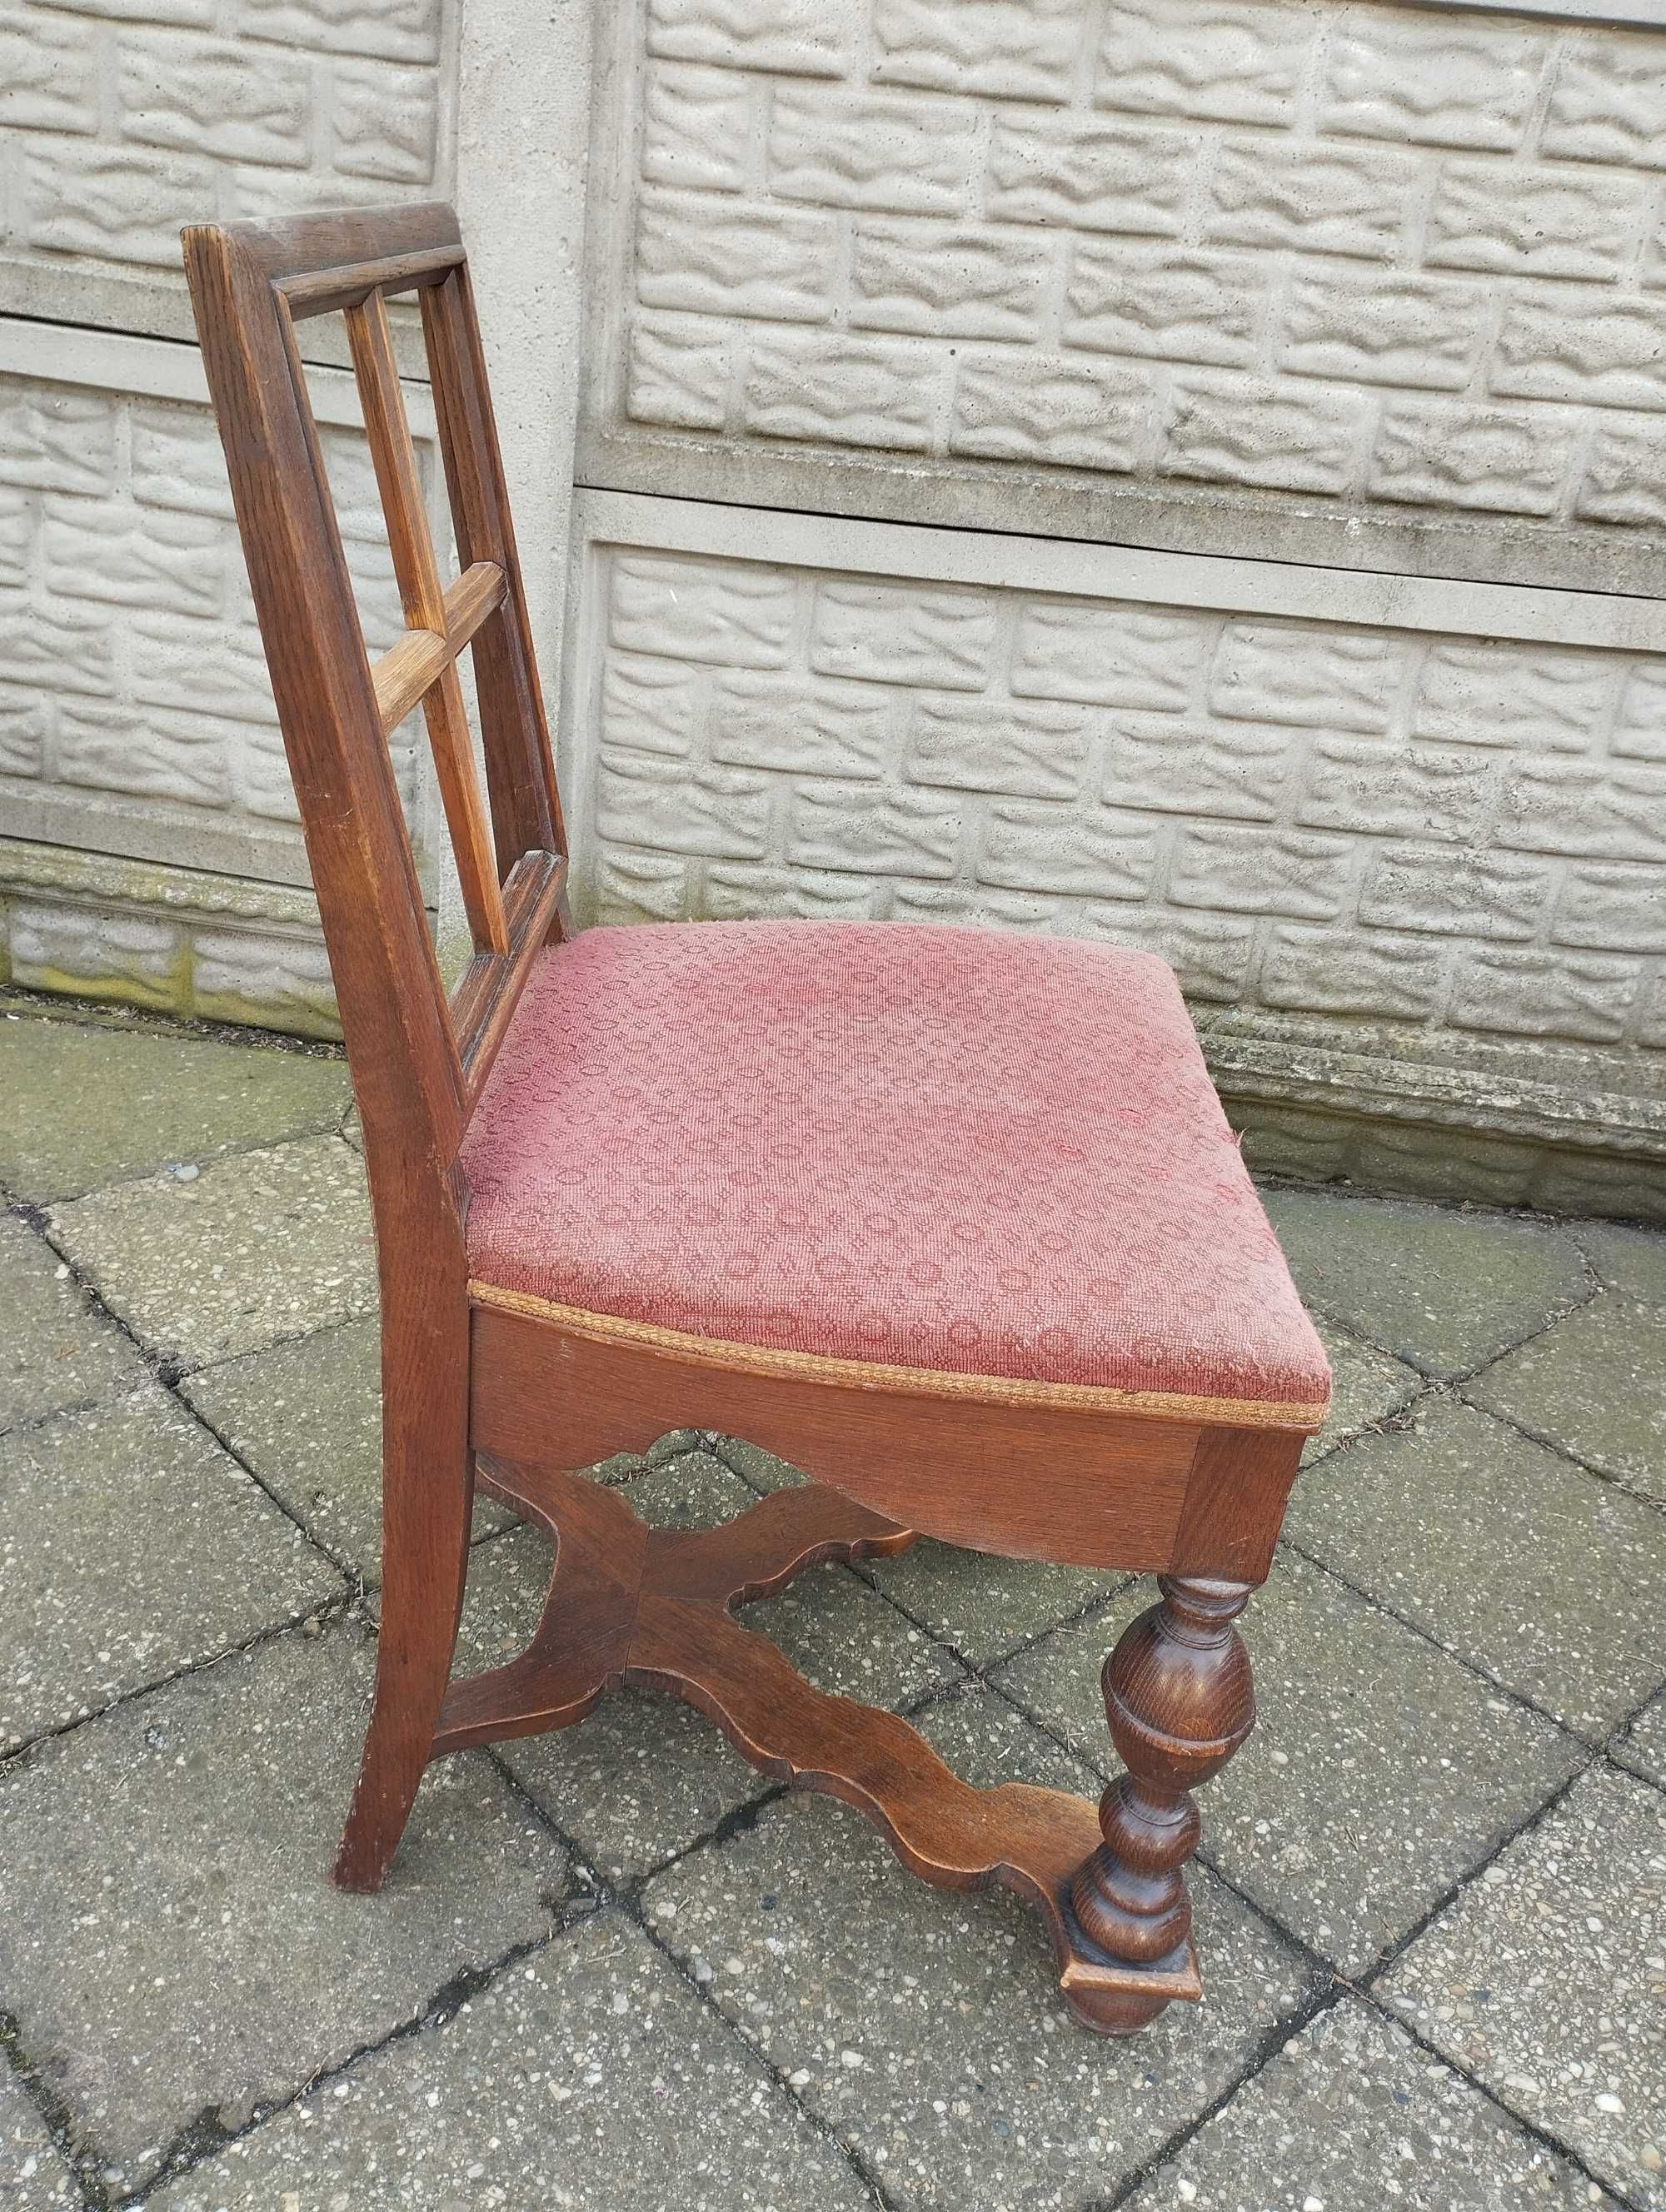 Stare krzesło 1szt.